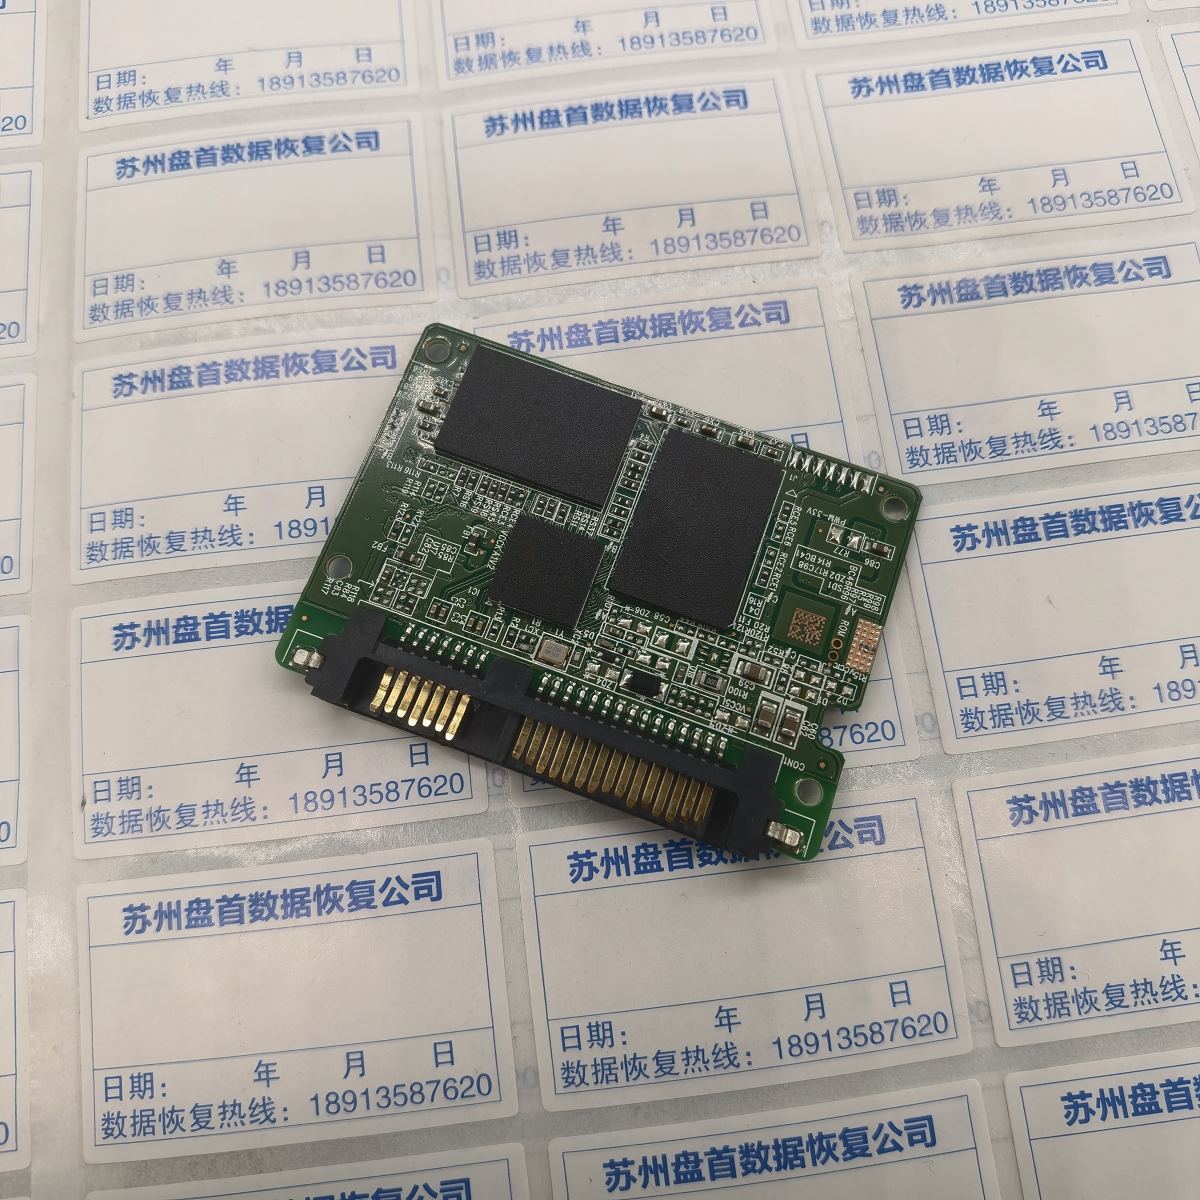 闪迪Z400S-256G固态硬盘，固件原因导致扇区读取错误导致数据丢失SM2246XT主控使用PC3000 SSD数据恢复成功